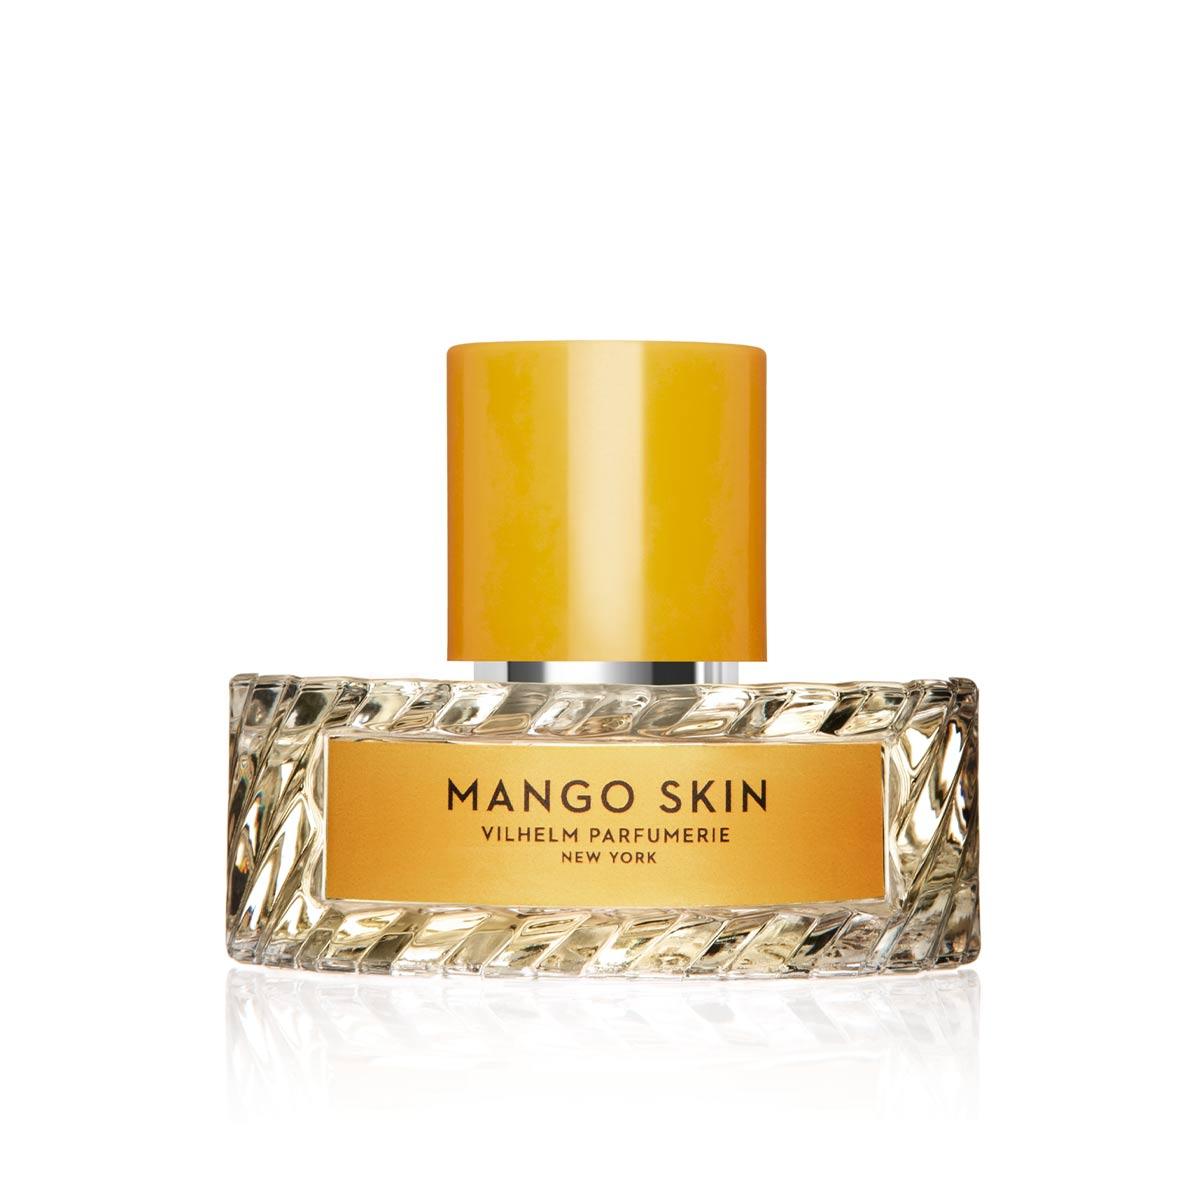 Primary image of Mango Skin EDP